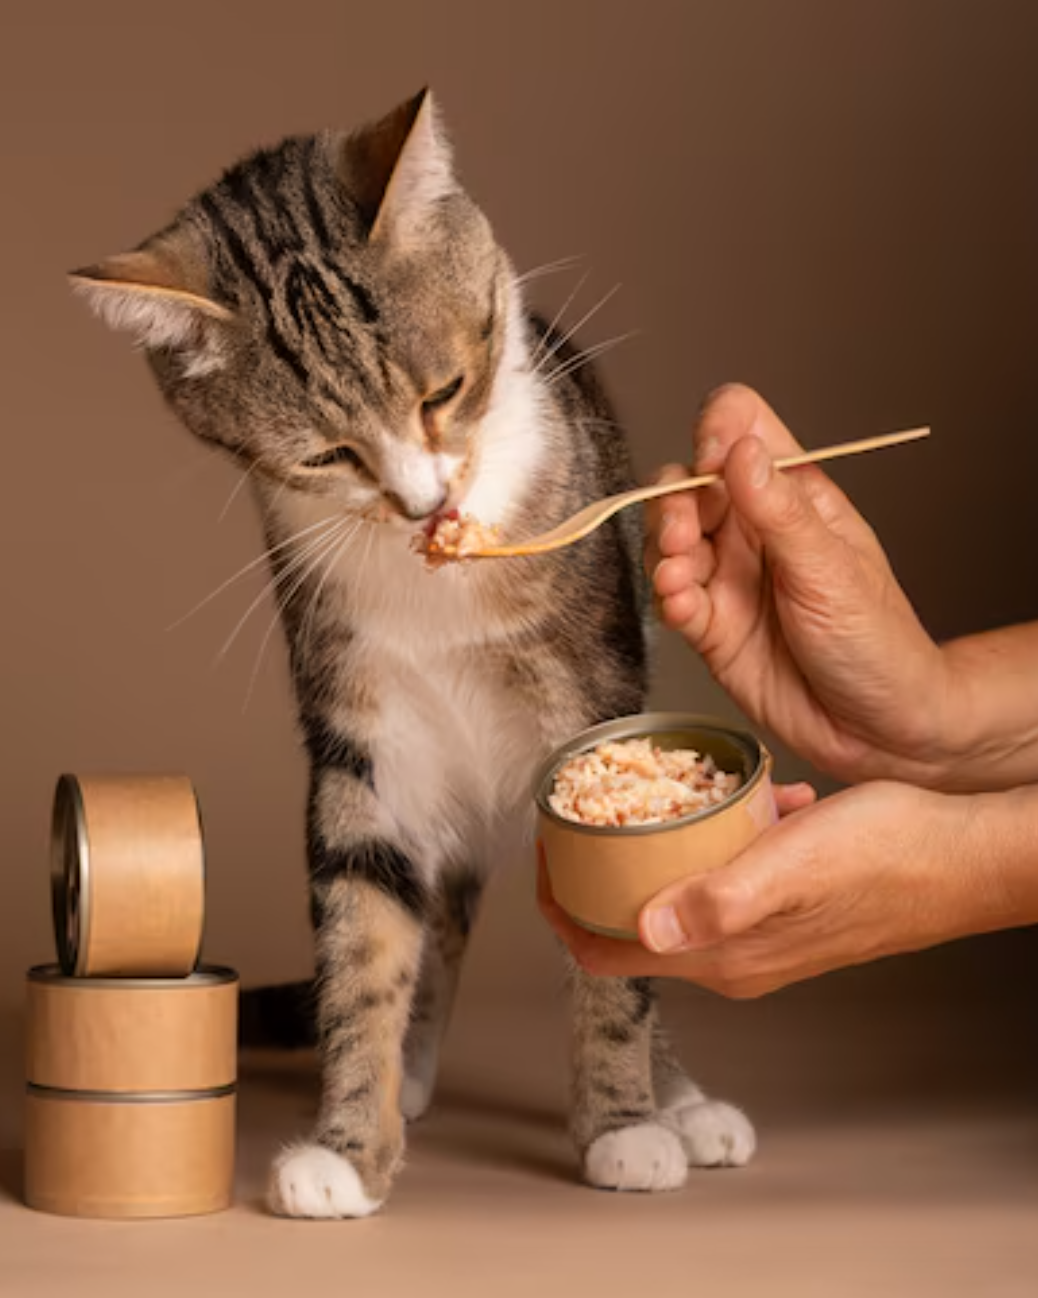 Как правильно выбрать и использовать лечебный корм для кормления вашего кота для поддержания его здоровья и благополучия?